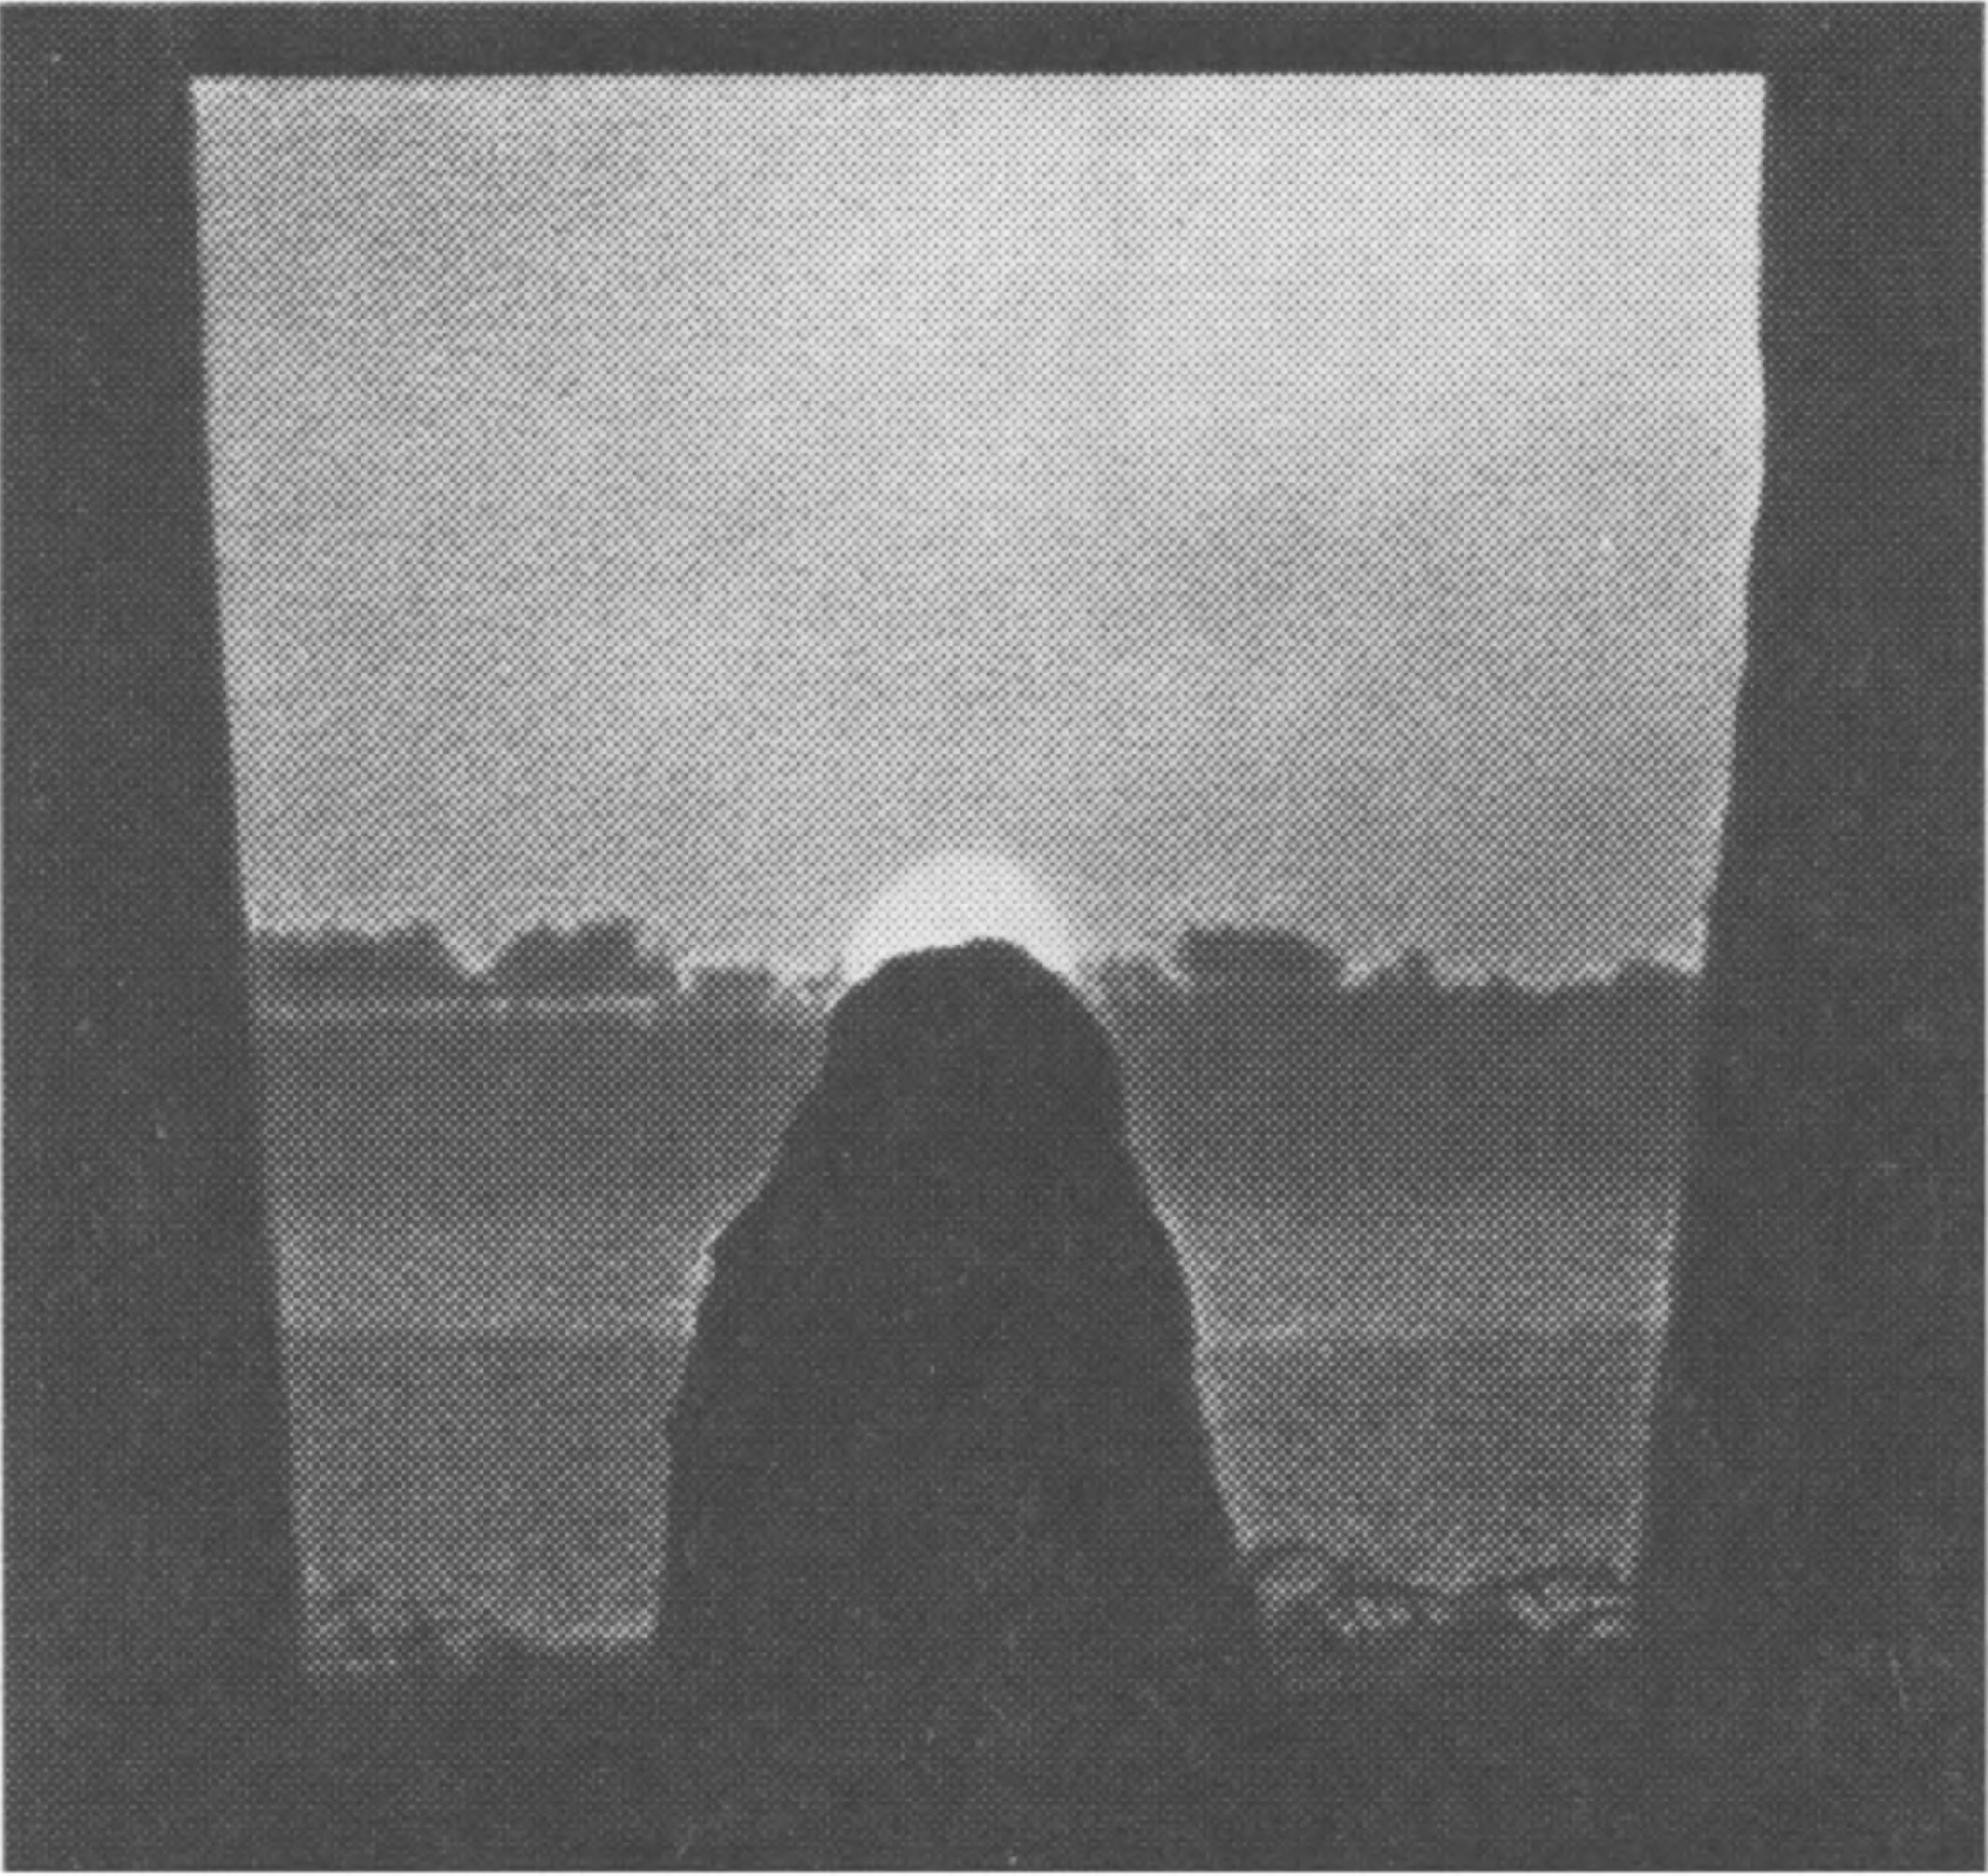 Фото 18. Снимок восхода Солнца 20 июня 1964 г., сделанный телеобъективом. В 2000 г. до н. э. Солнце находилось бы выше на один свой диаметр